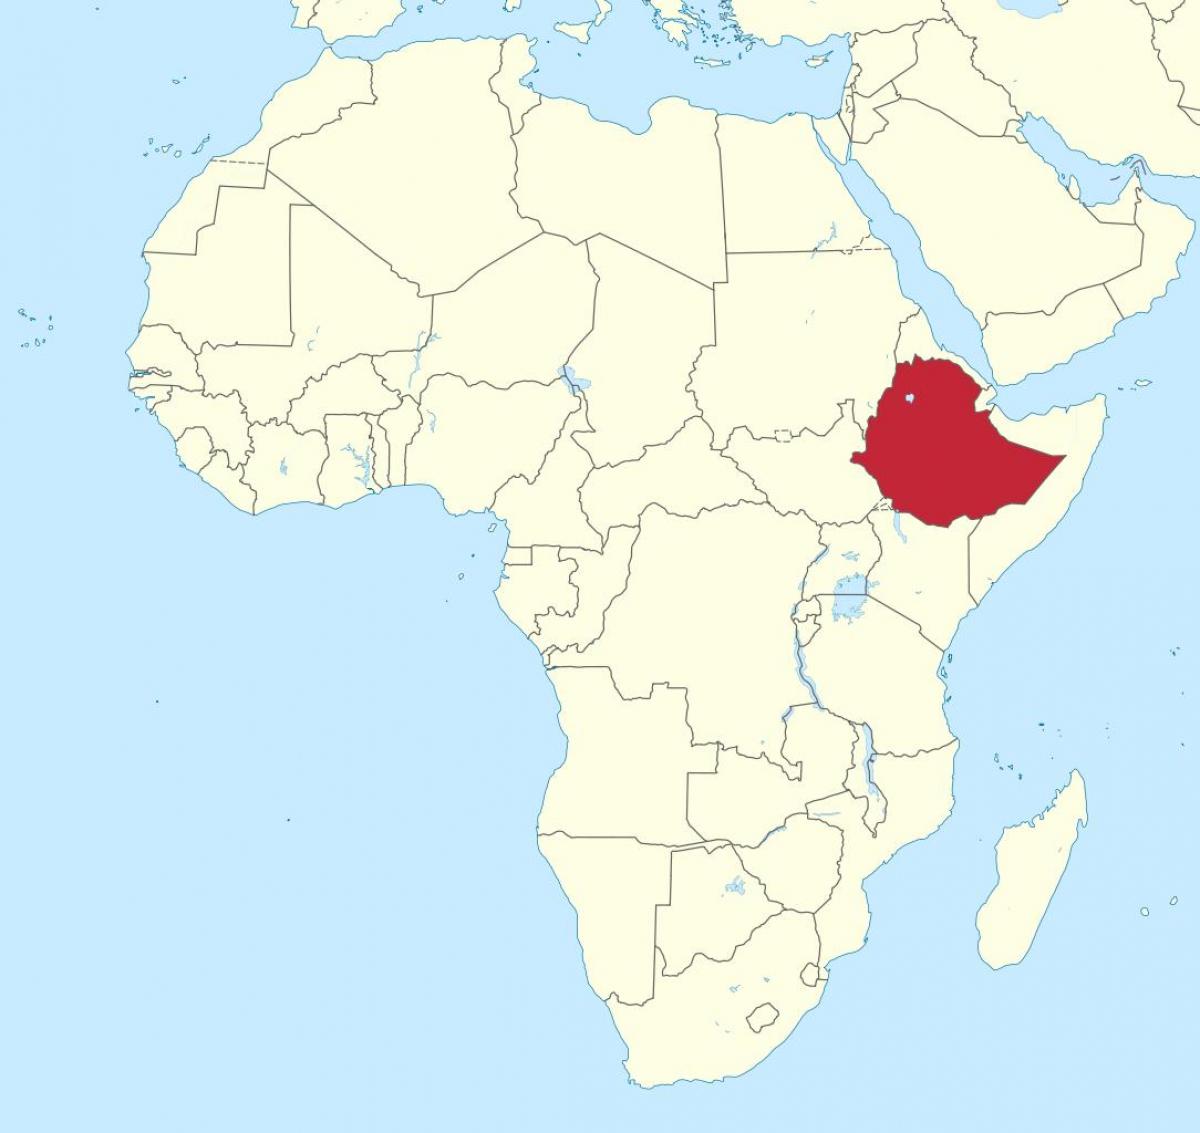 karta Afrike, pokazujući Etiopiji